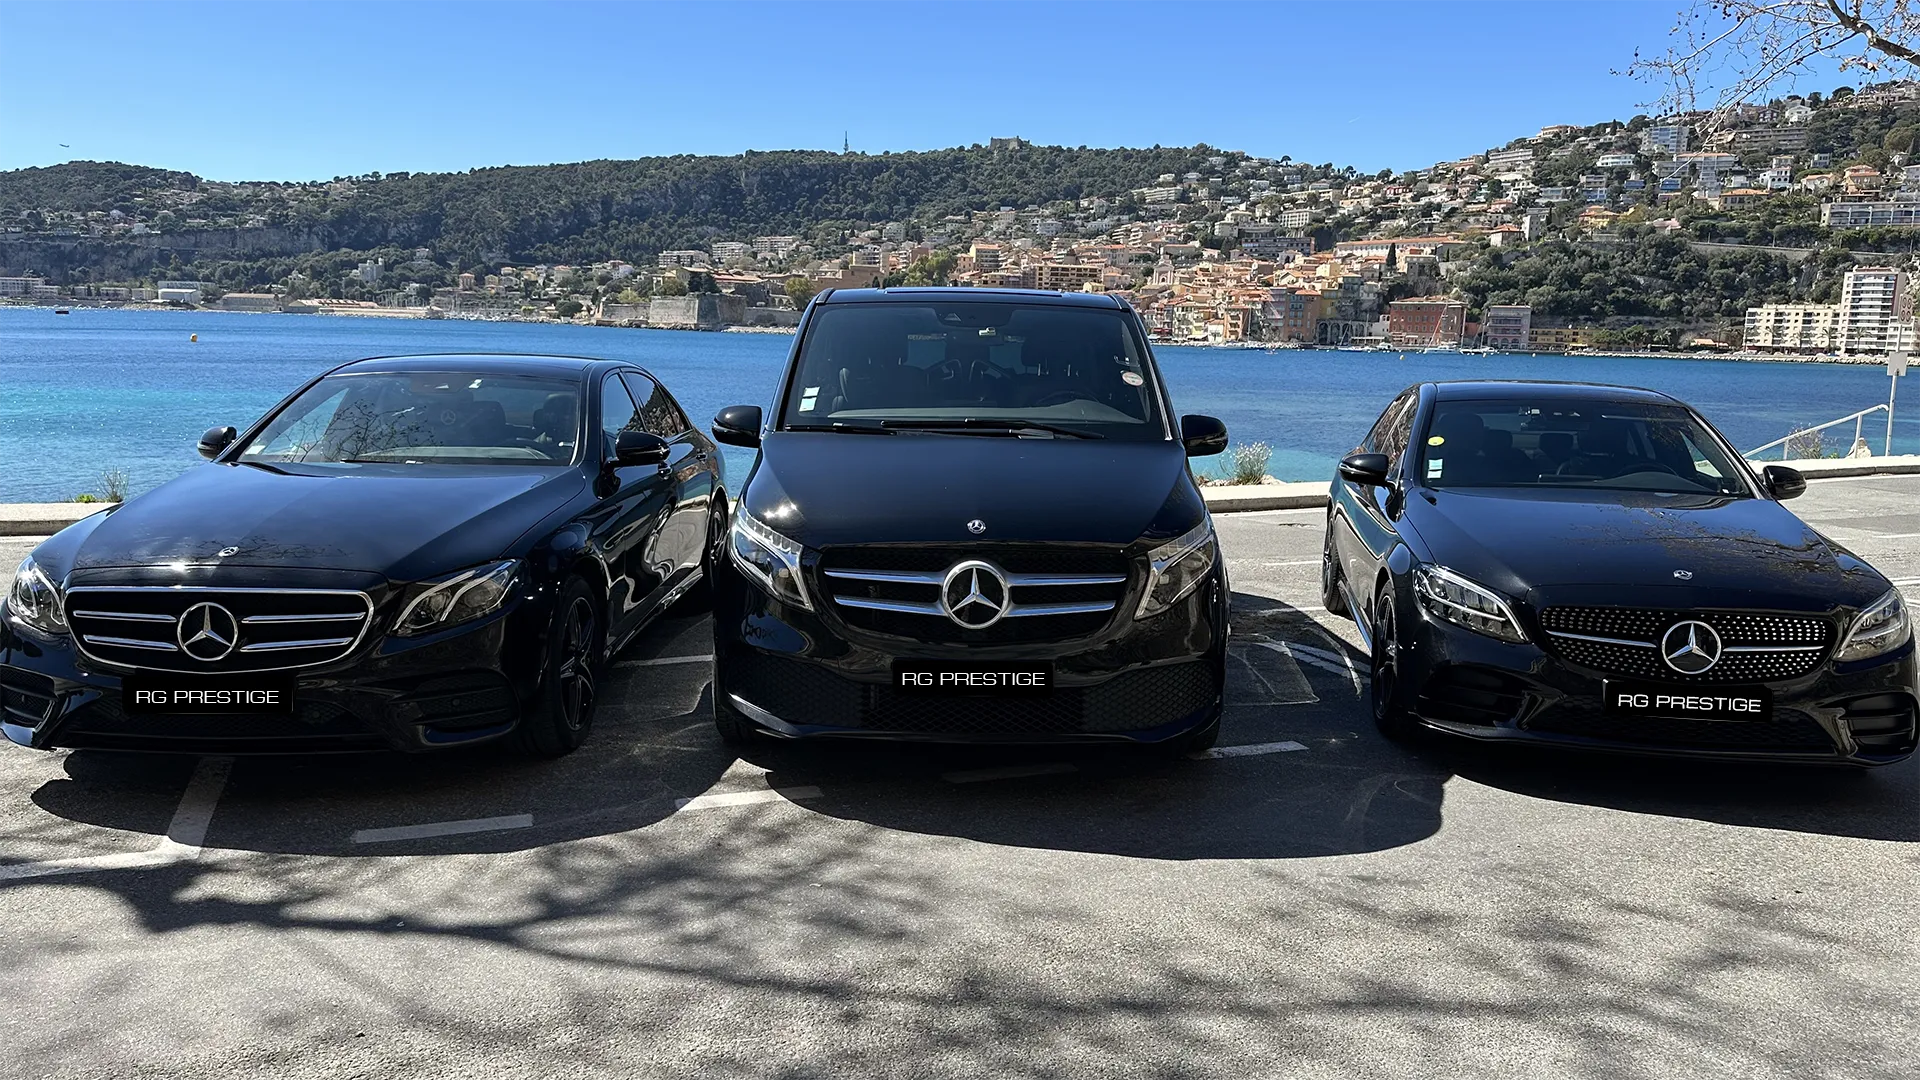 Notre flotte de véhicules haut de gamme : Classe E, Classe S et Van Mercedes